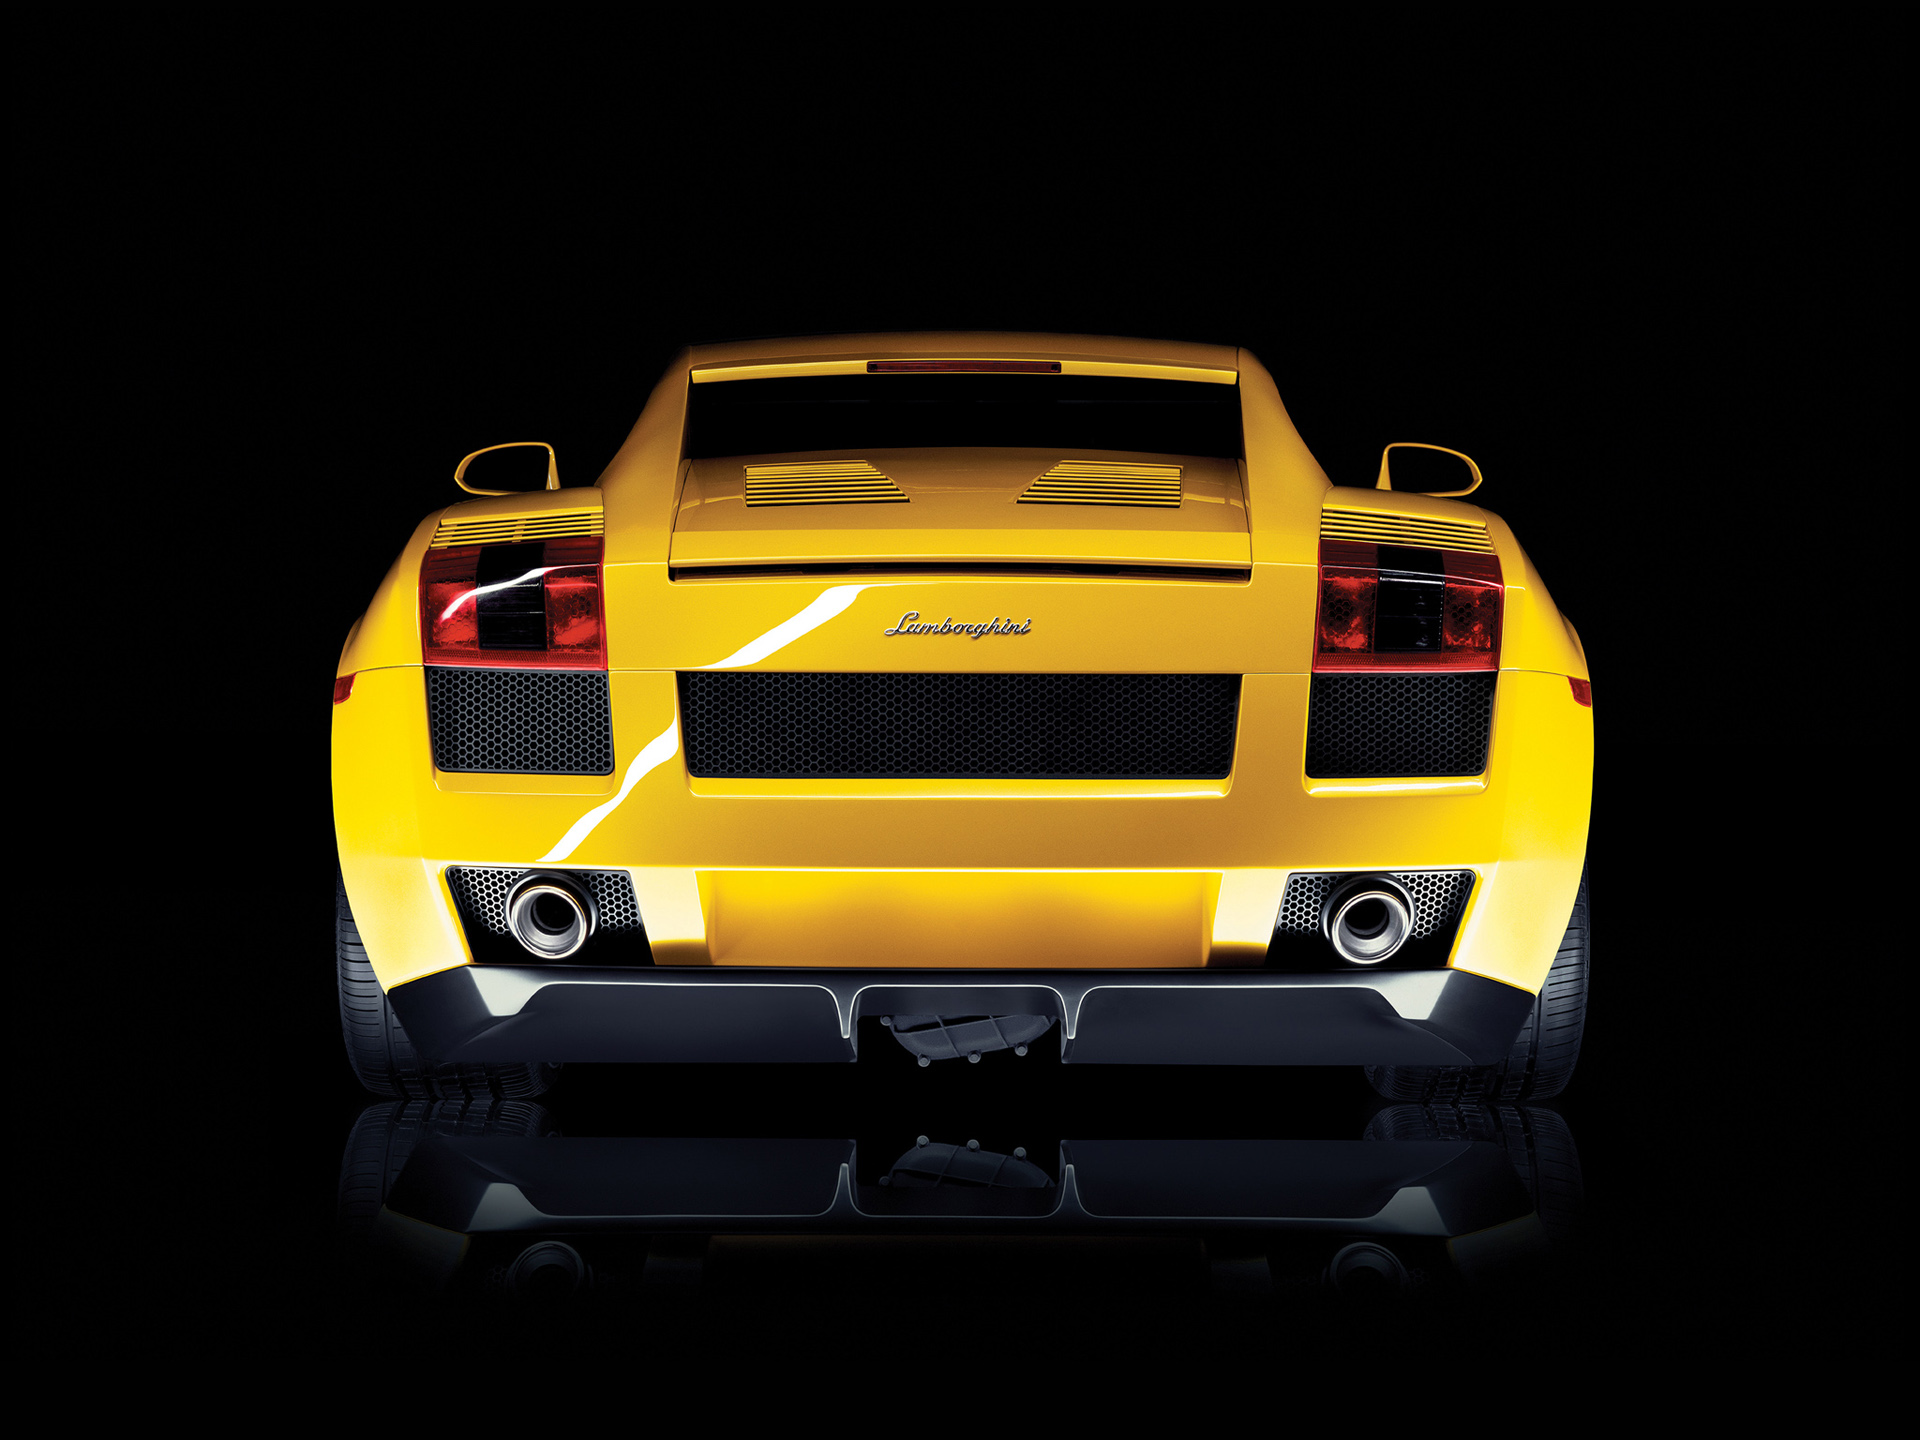  2003 Lamborghini Gallardo Wallpaper.